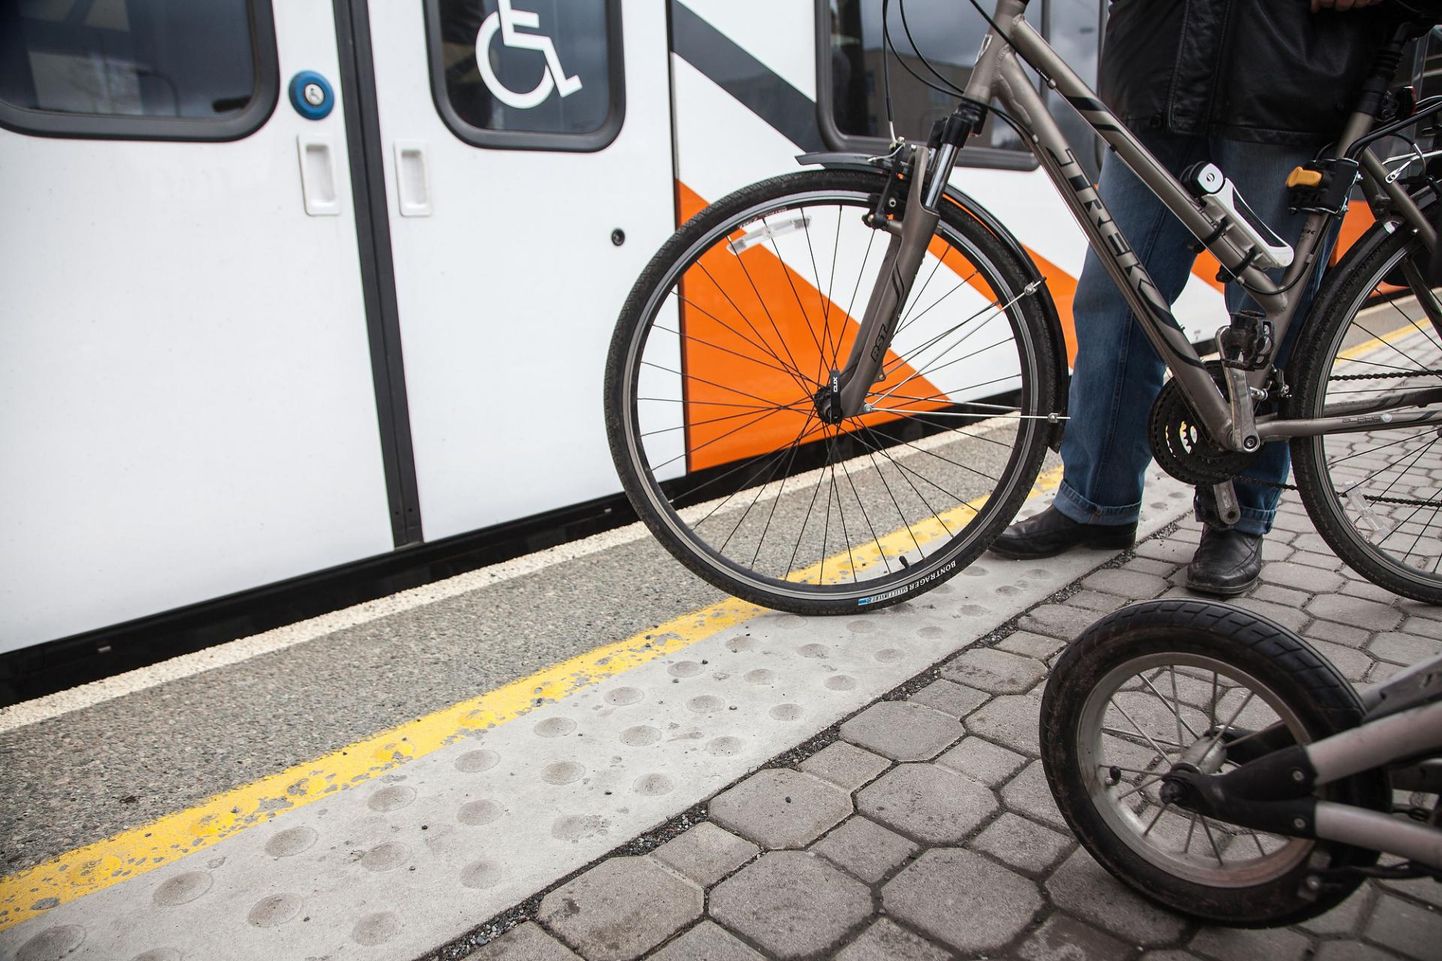 Sõiduplaanis märgitud oranž värv näitab, et rongi mahuvad vaid üksikud jalgrattad. Foto on illustratiivne.